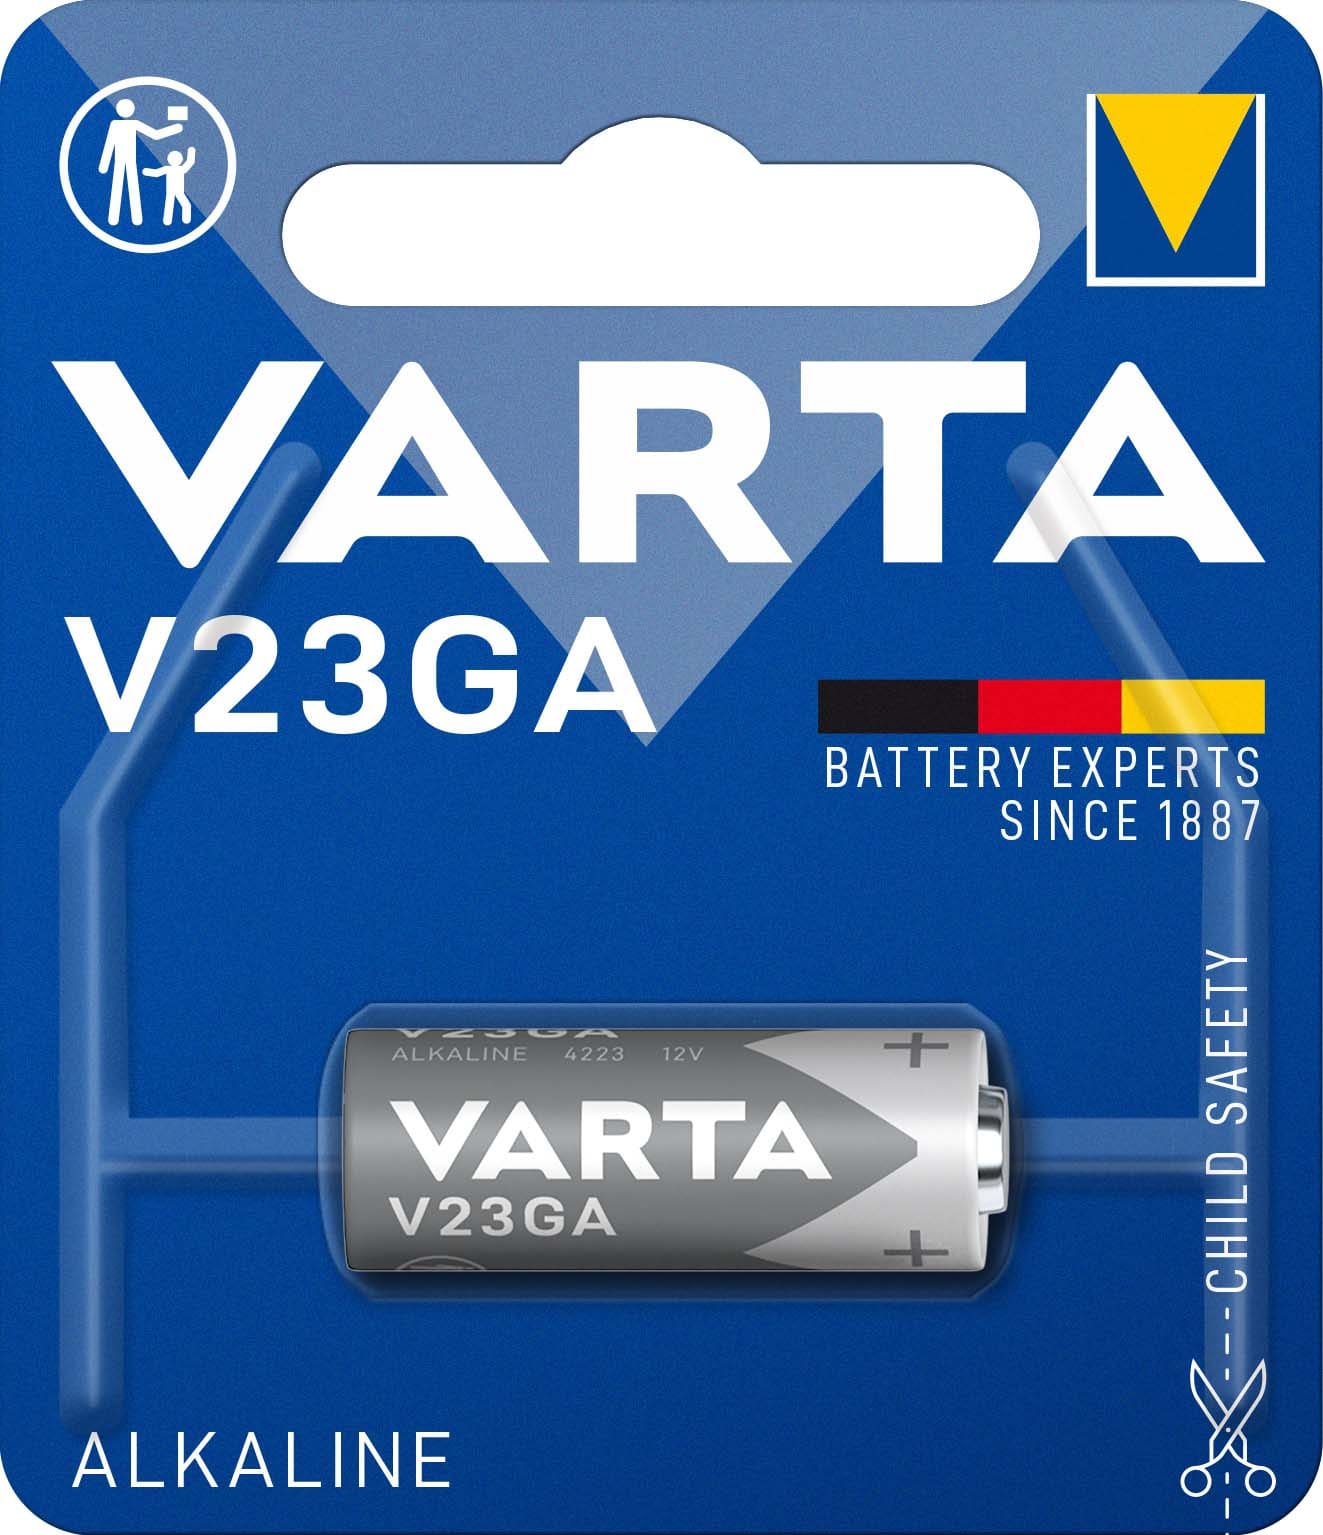 Varta Professional V23GA Knopfzellen-Batterie 12V 52mAh 1-Stück